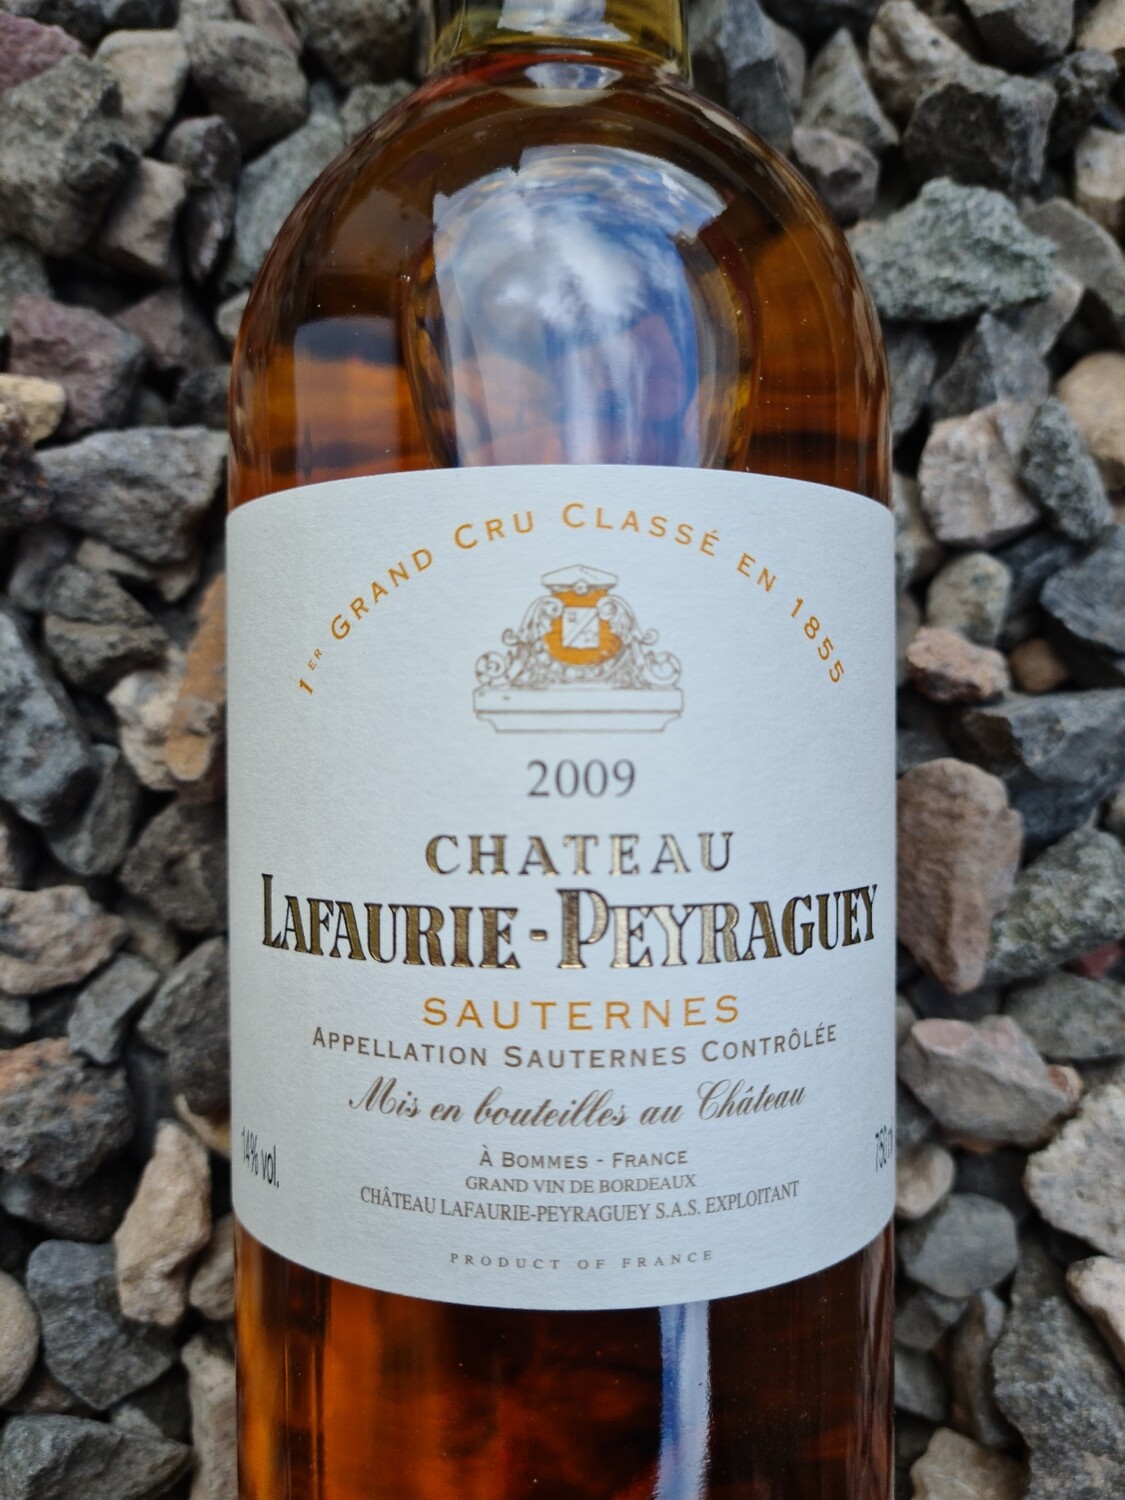 Chateau Lafaurie-Peyraguey 2009 Sauternes